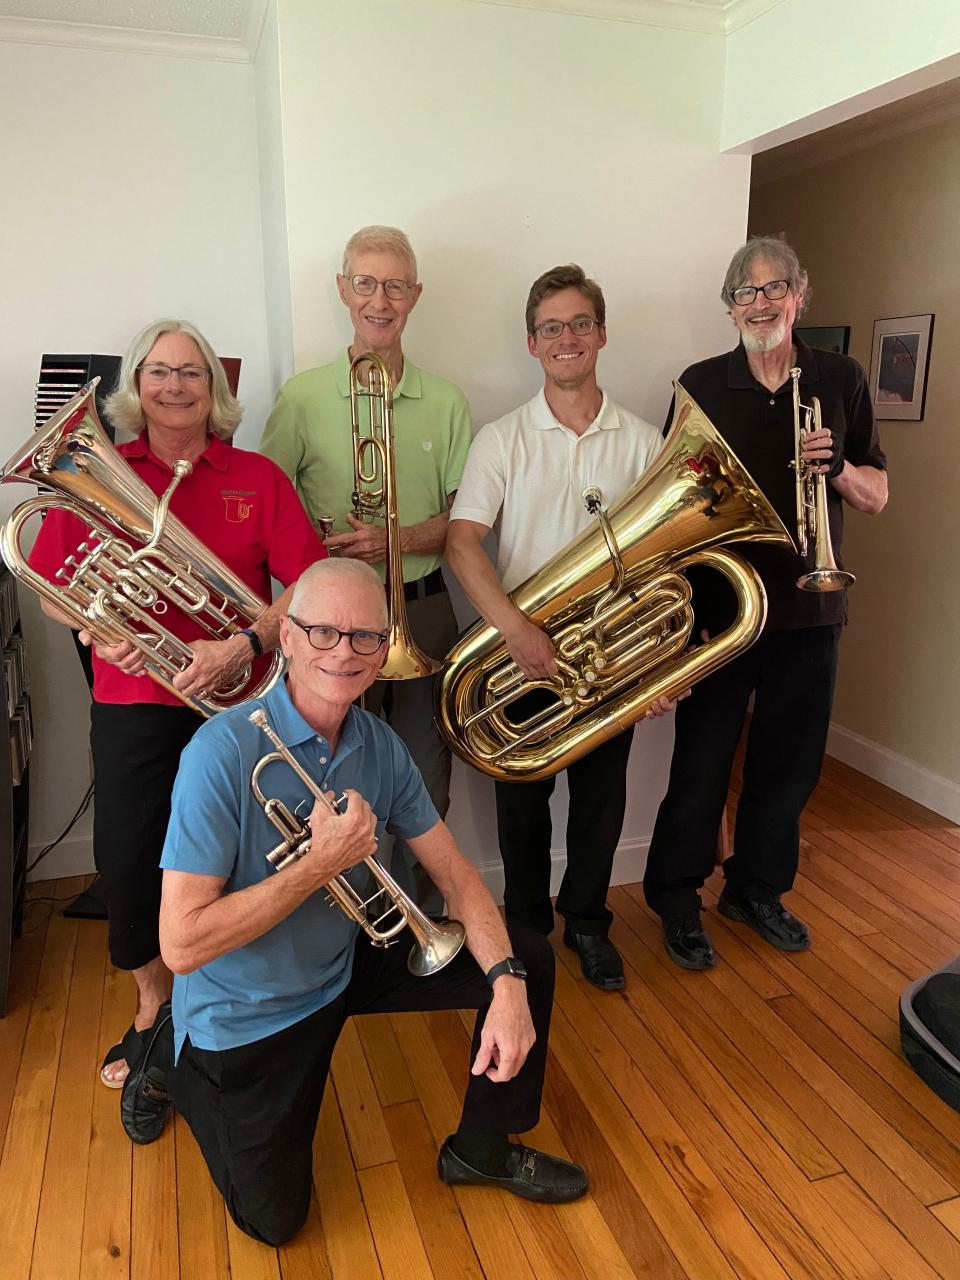 The Battle Brass Quintet features Greg Foertter, trumpet; Jim Hix, French horn; Ron Battle, trombone; Stephen Duden, tuba; Kim Kasten, trumpet.